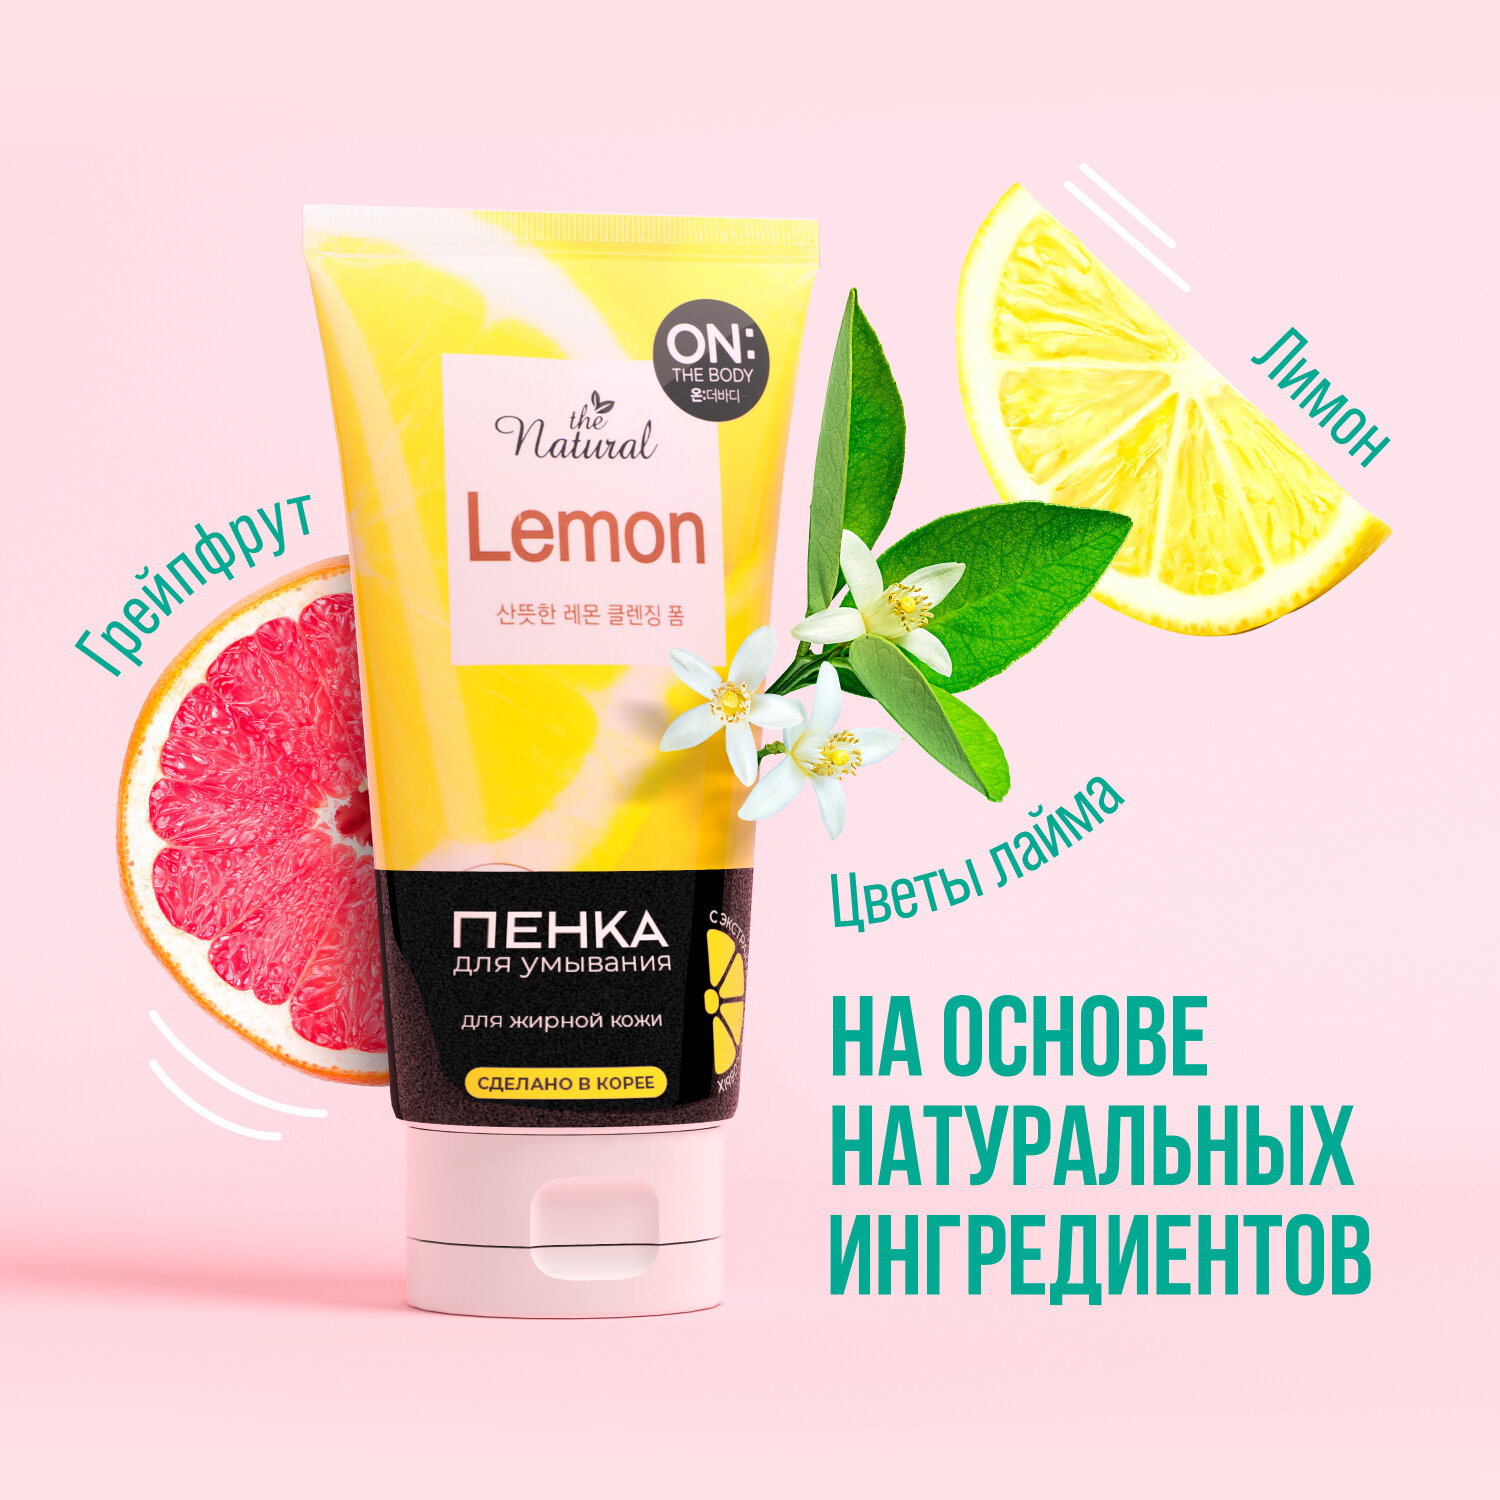 OTB natural lemon пенка для умывания с экстрактом цитрусовых 120 гр